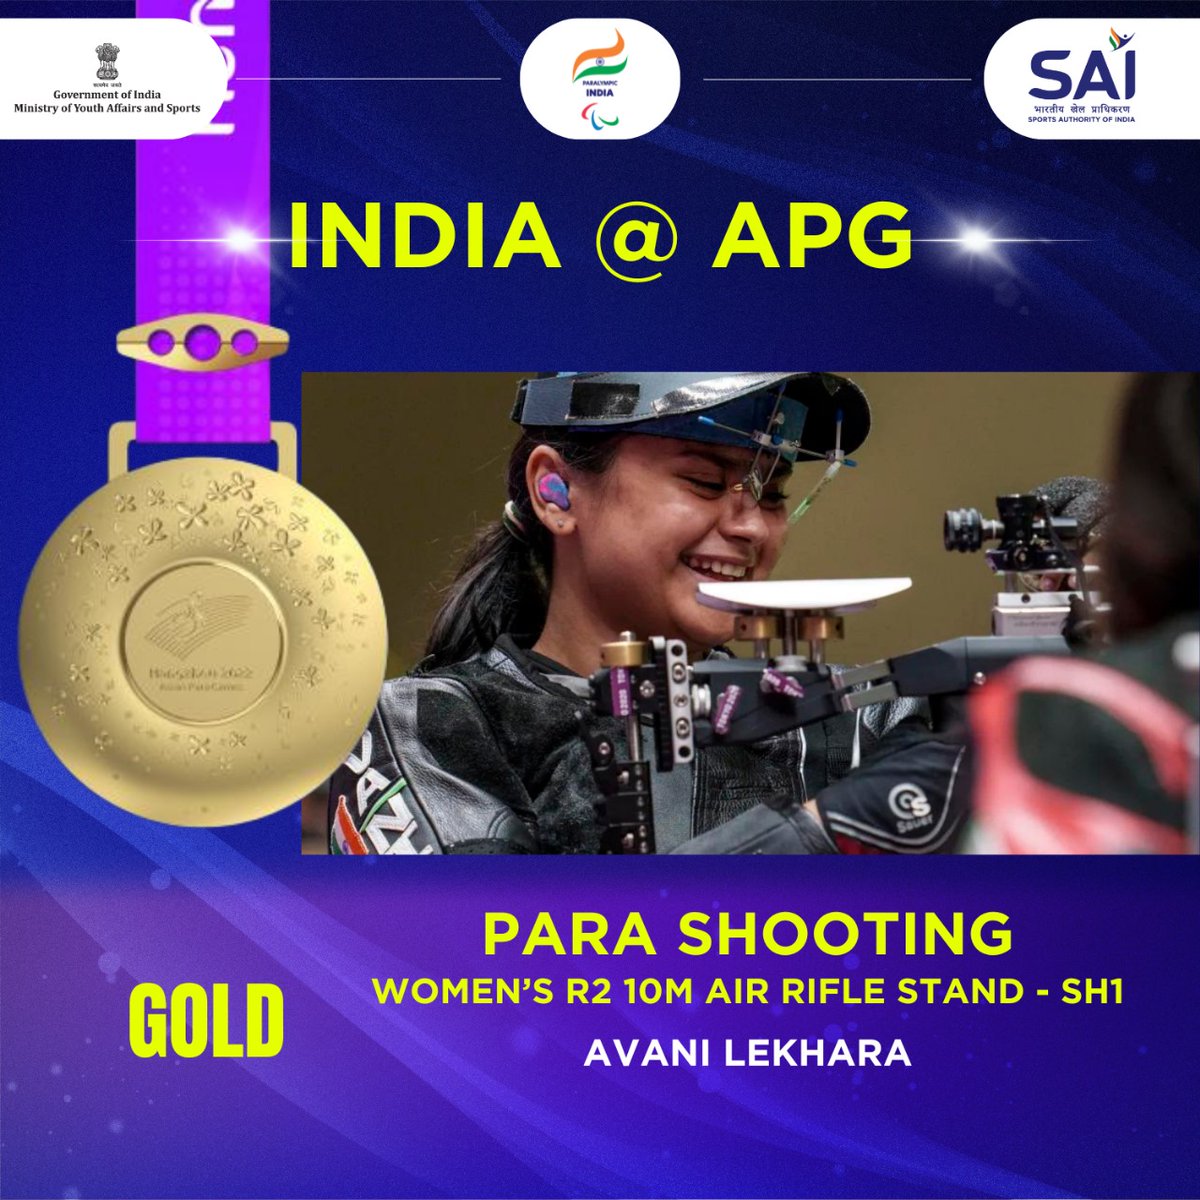 भारत की बेटी @AvaniLekhara को पैरा एशियन गेम्स में 10 मीटर एयर राइफल में स्वर्ण पदक जीतने पर हार्दिक बधाई एवं उज्जवल भविष्य की शुभकामनाएं। आप भविष्य में भी देश को इसी तरह गौरवान्वित करती रहें, यही कामना है।
#AsianParaGames2022